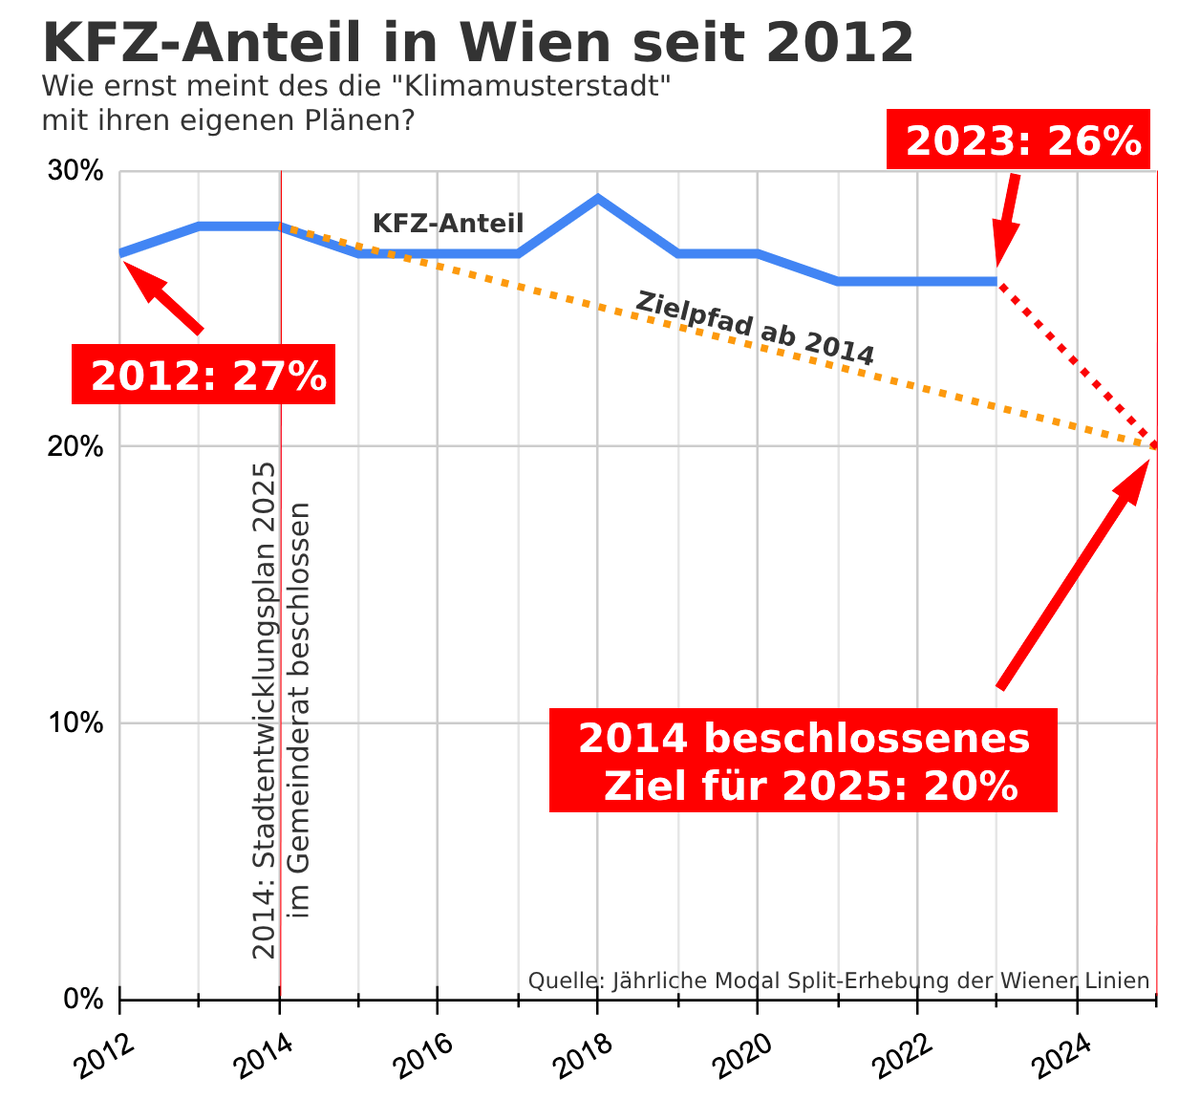 Thread 🧵: Seit 2012 stagniert der KFZ-Anteil in Wien, obwohl sich die Stadt 2014 für 2025 das Ziel gesetzt hat, den KFZ-Anteil auf 20% zu senken. Dieses Ziel wird verfehlt werden, trotz viel Marketing der Stadt rund um 'Klimamusterstadt' und 'Raus aus dem Asfalt'. 1/6